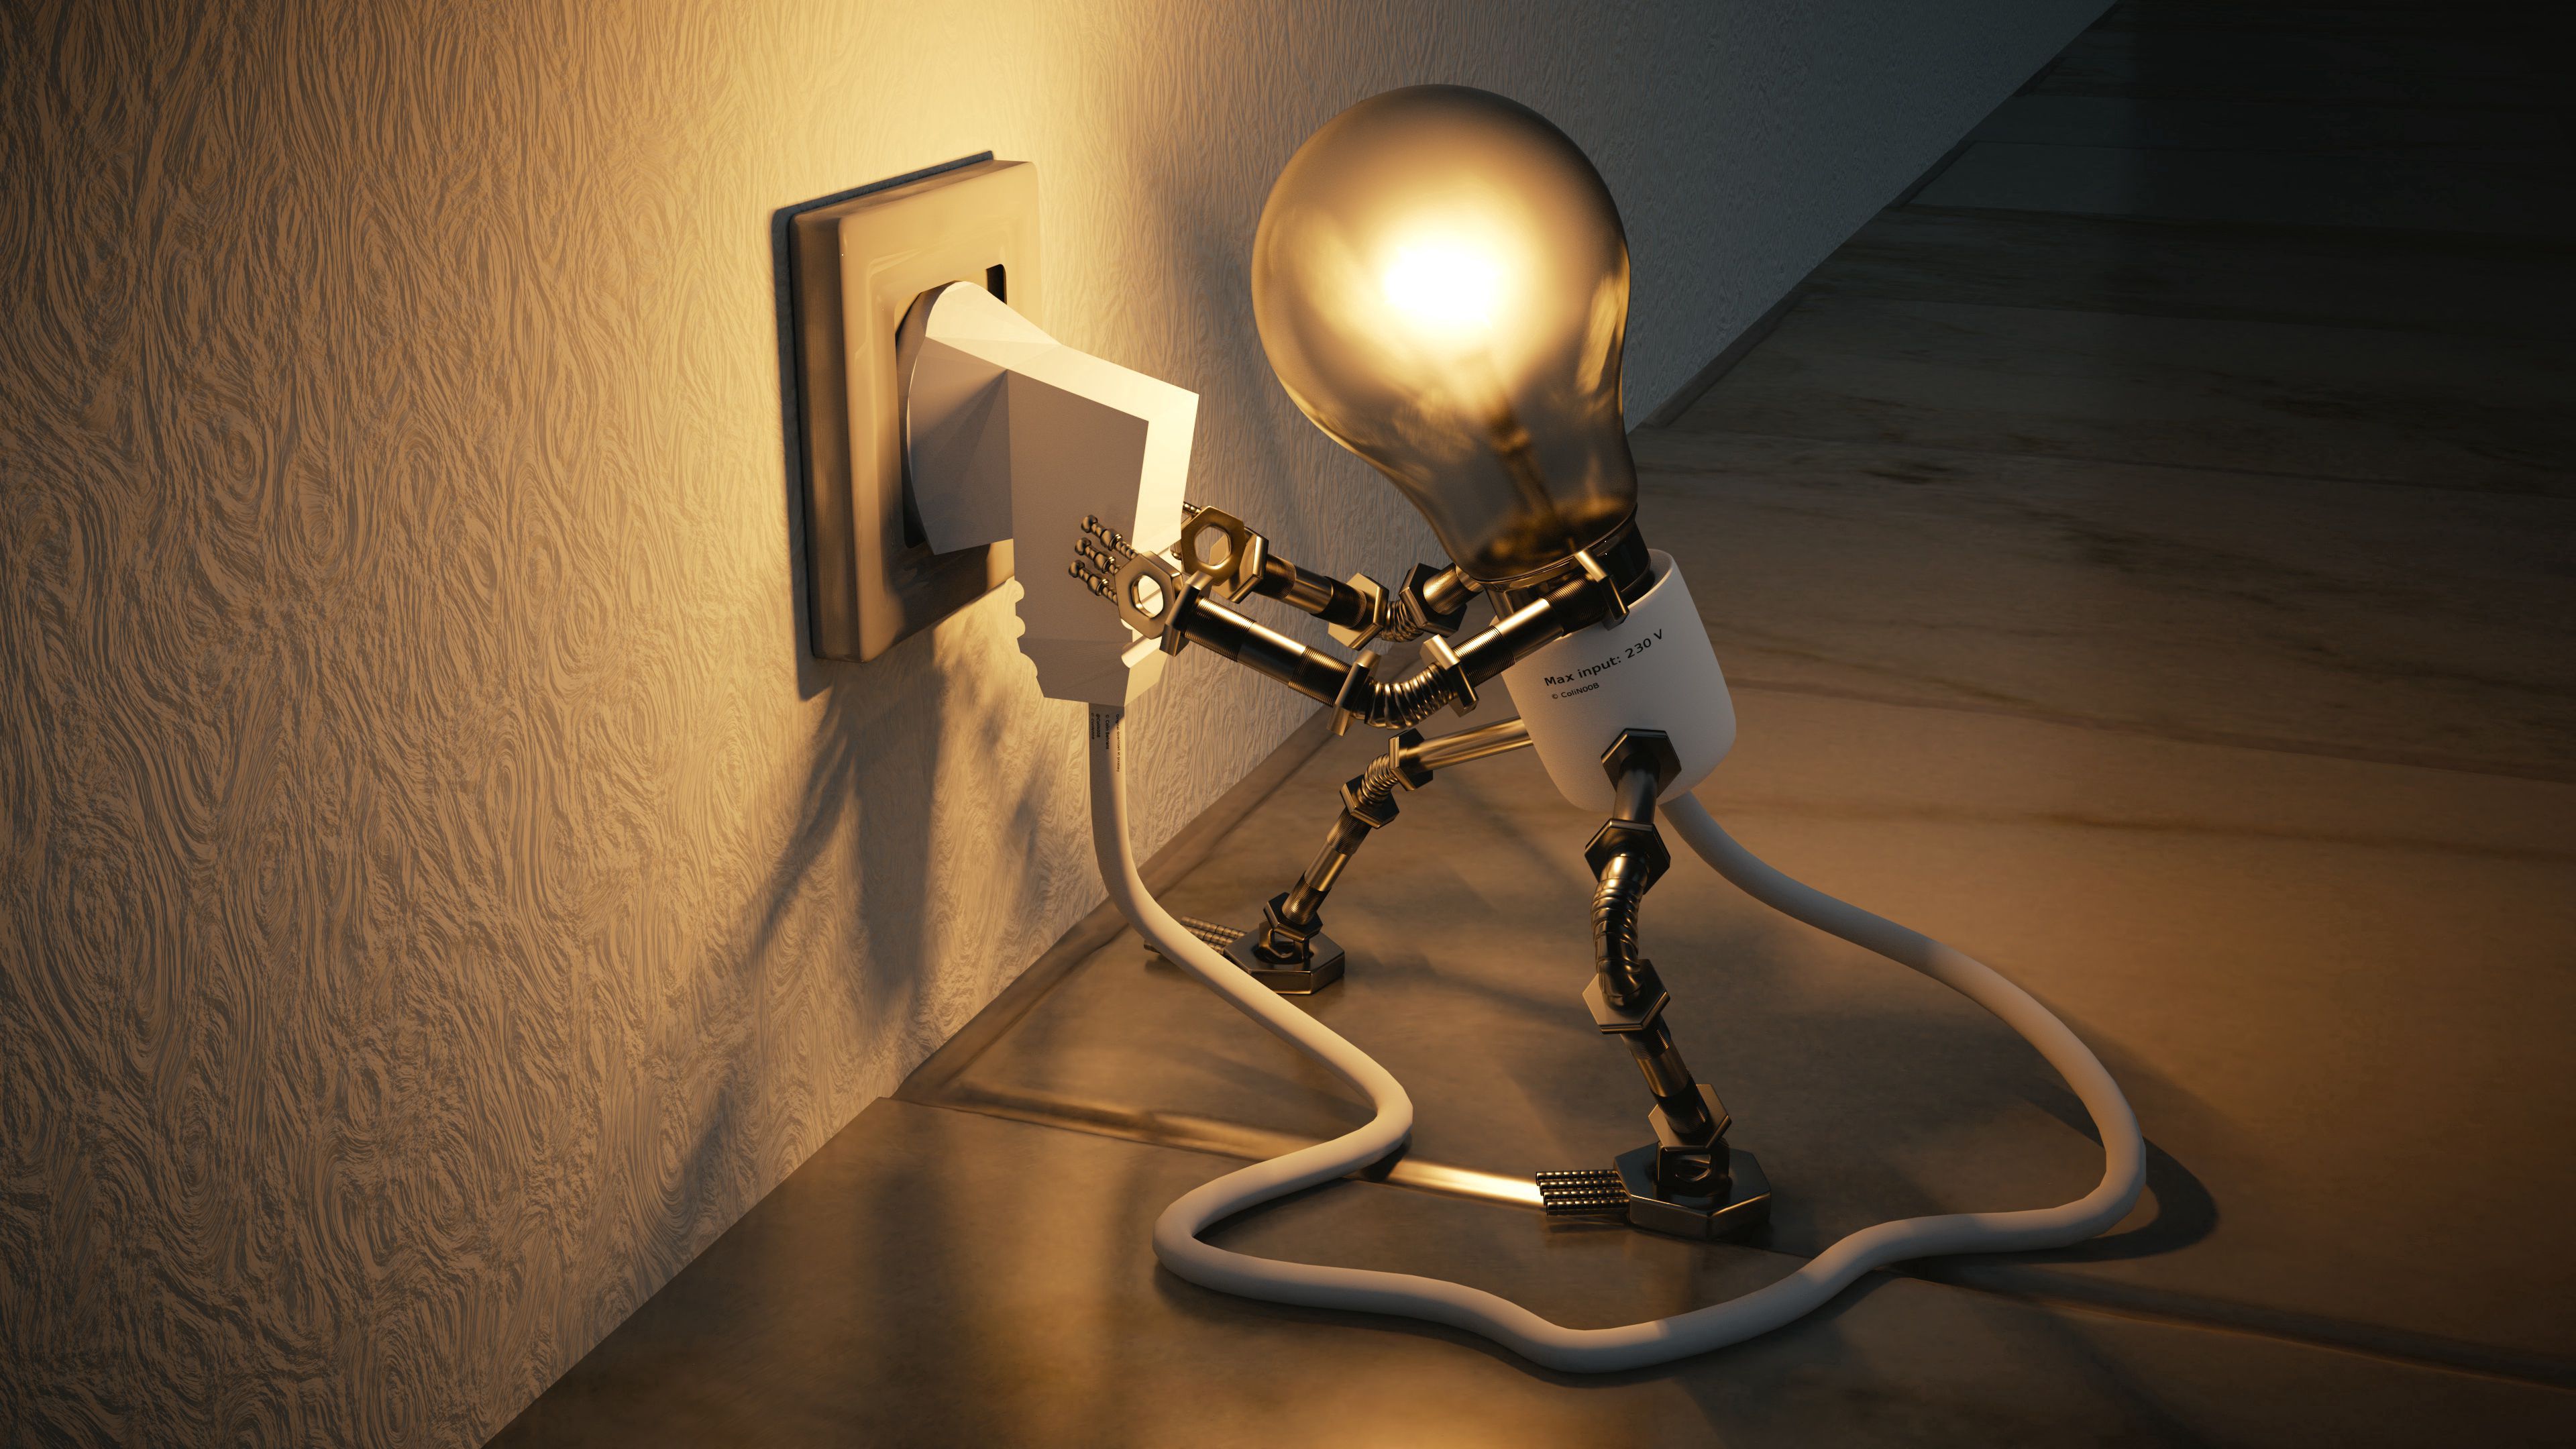 socket, lamp, electricity, 3d, idea, rosette wallpaper for mobile